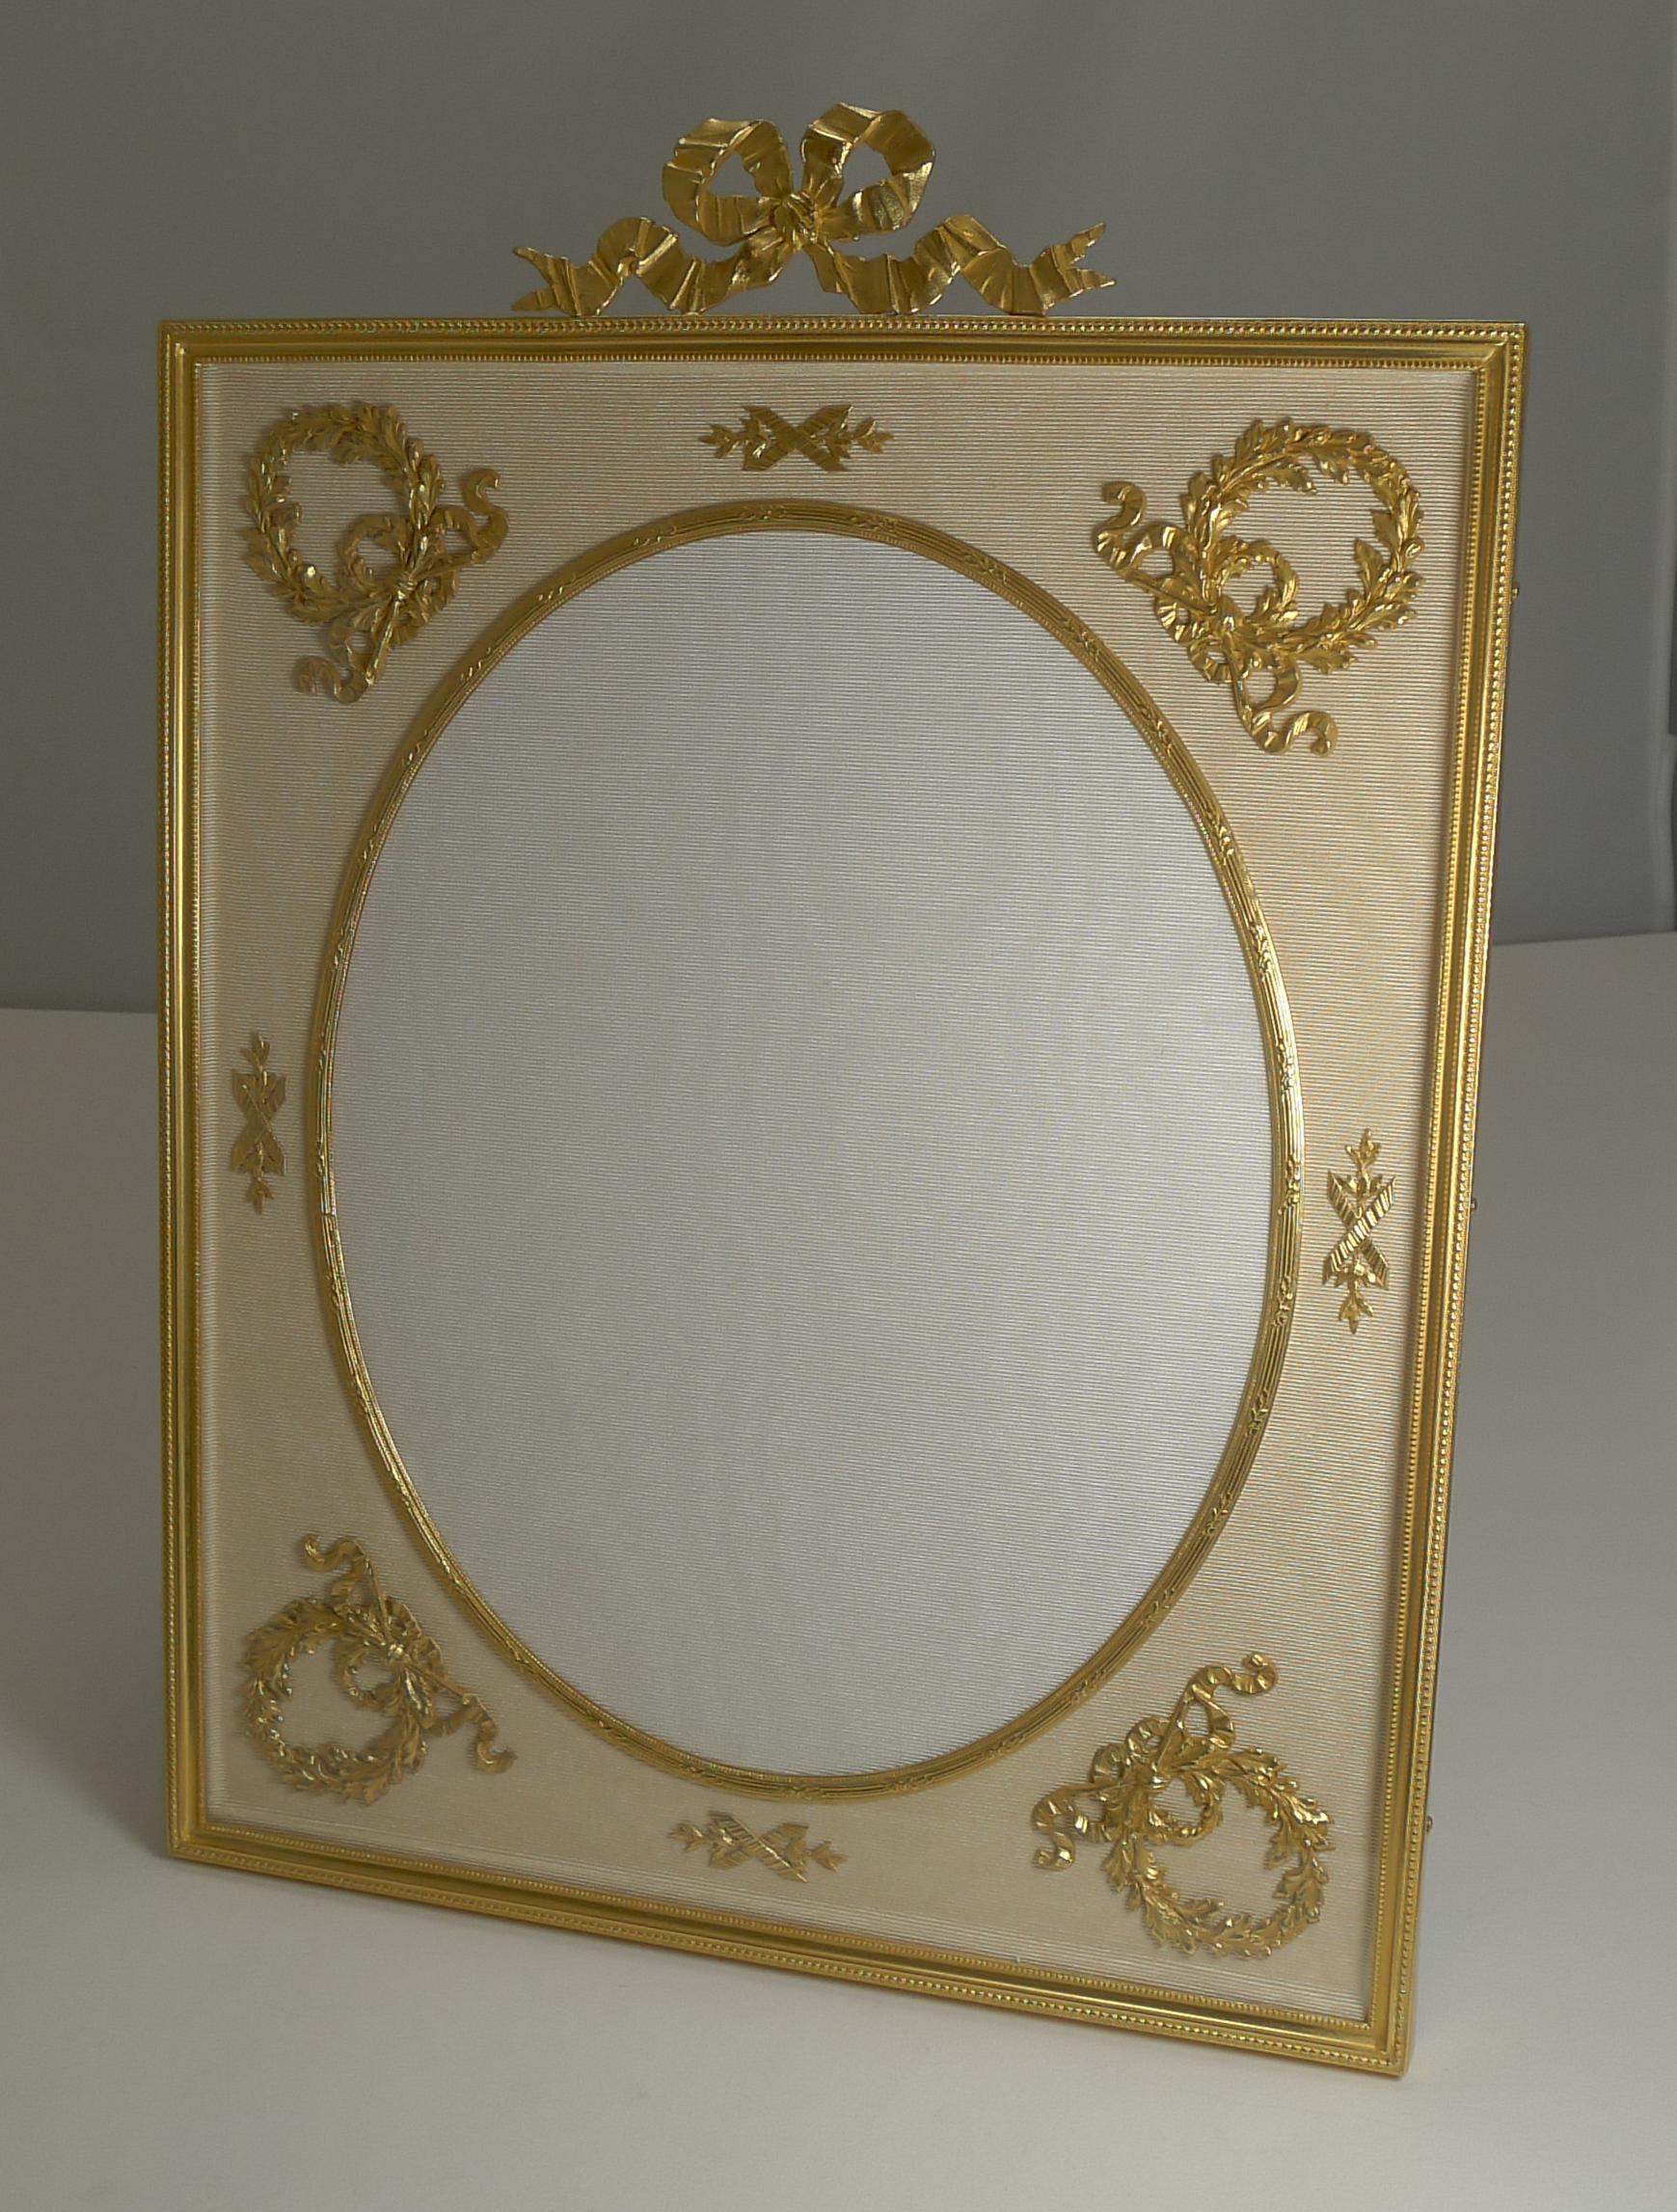 Ein exquisiter und sehr großer französischer Ormolu-Bilderrahmen aus der Zeit um 1900. Der cremefarbene Seidentaft unter dem Glas ist mit einer vergoldeten Halterung versehen, die aus Bronze gefertigt und mit Gold überzogen ist.

Die ovale Öffnung